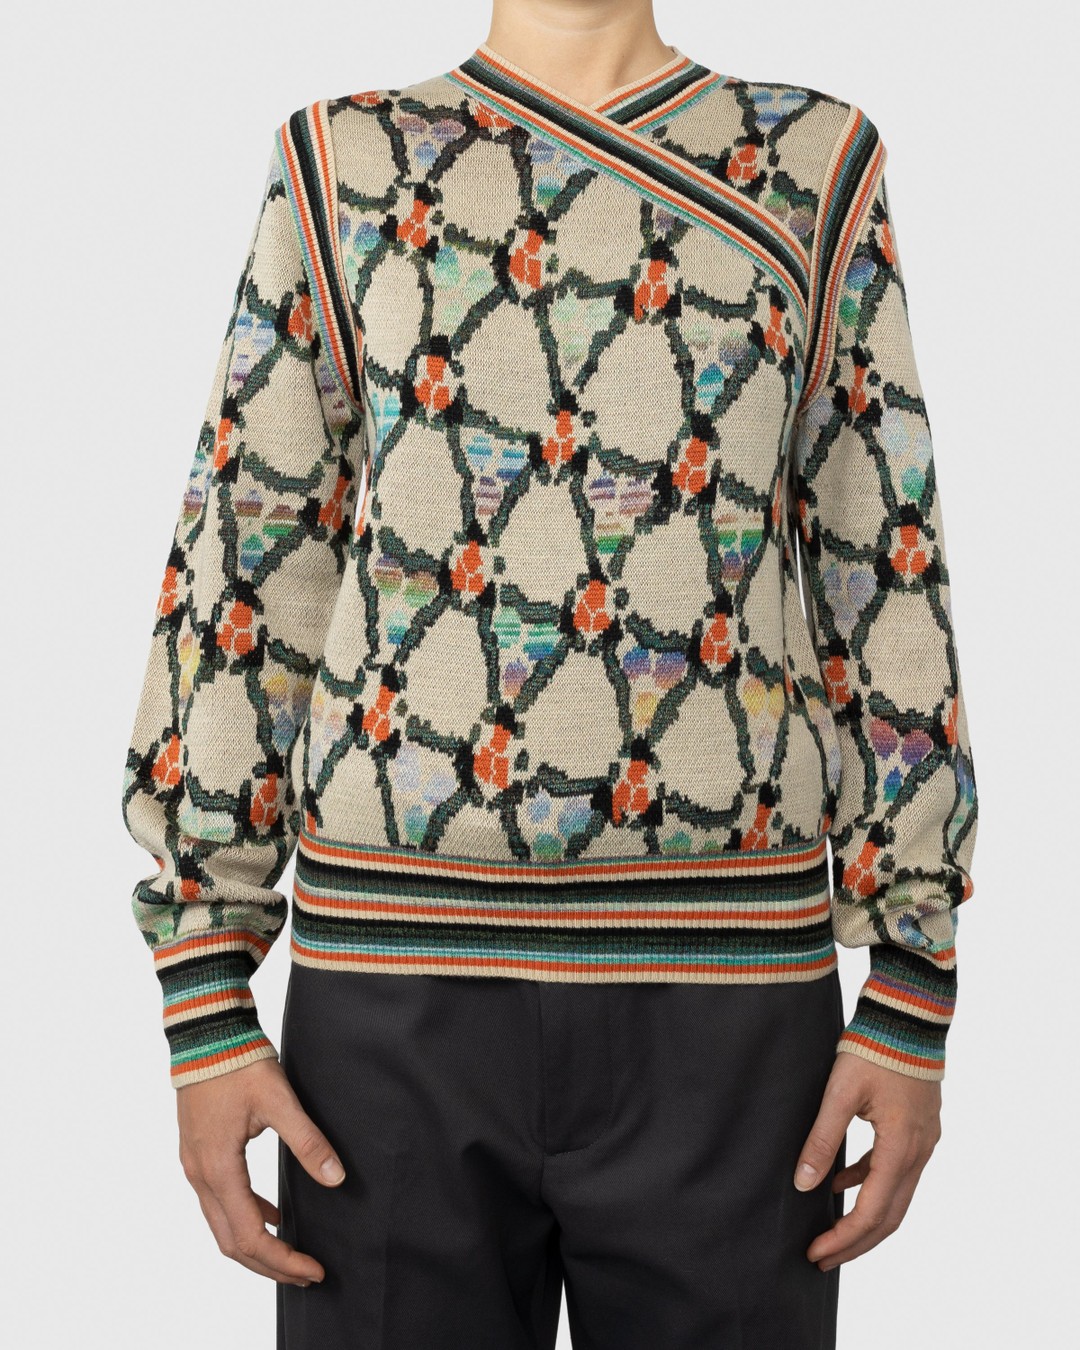 Acne Studios – Wrapped Sweater Beige - V-Necks Knitwear - Multi - Image 2